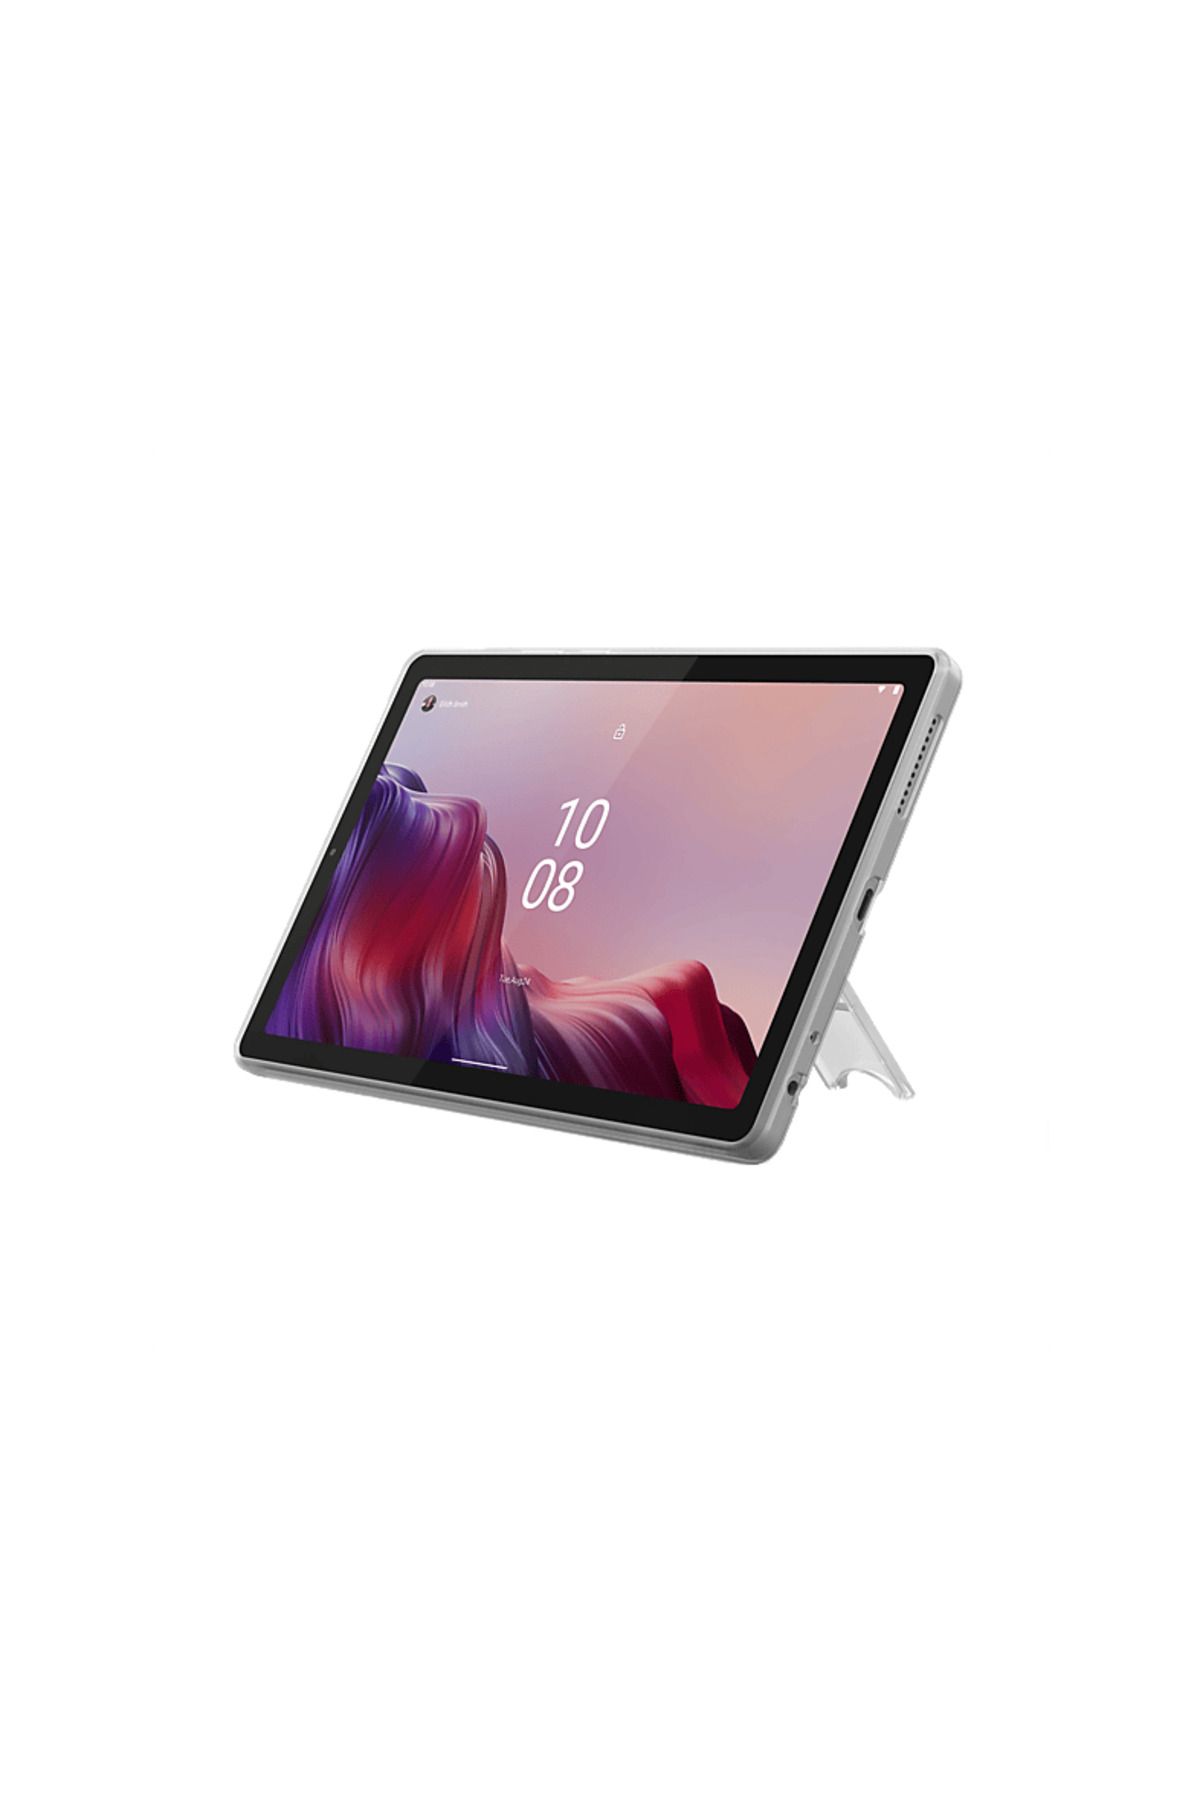 LENOVO M9 9 inç 64 GB IPS FHD Tablet Gri + Kılıf + Ekran Filmi ZAC30155TR